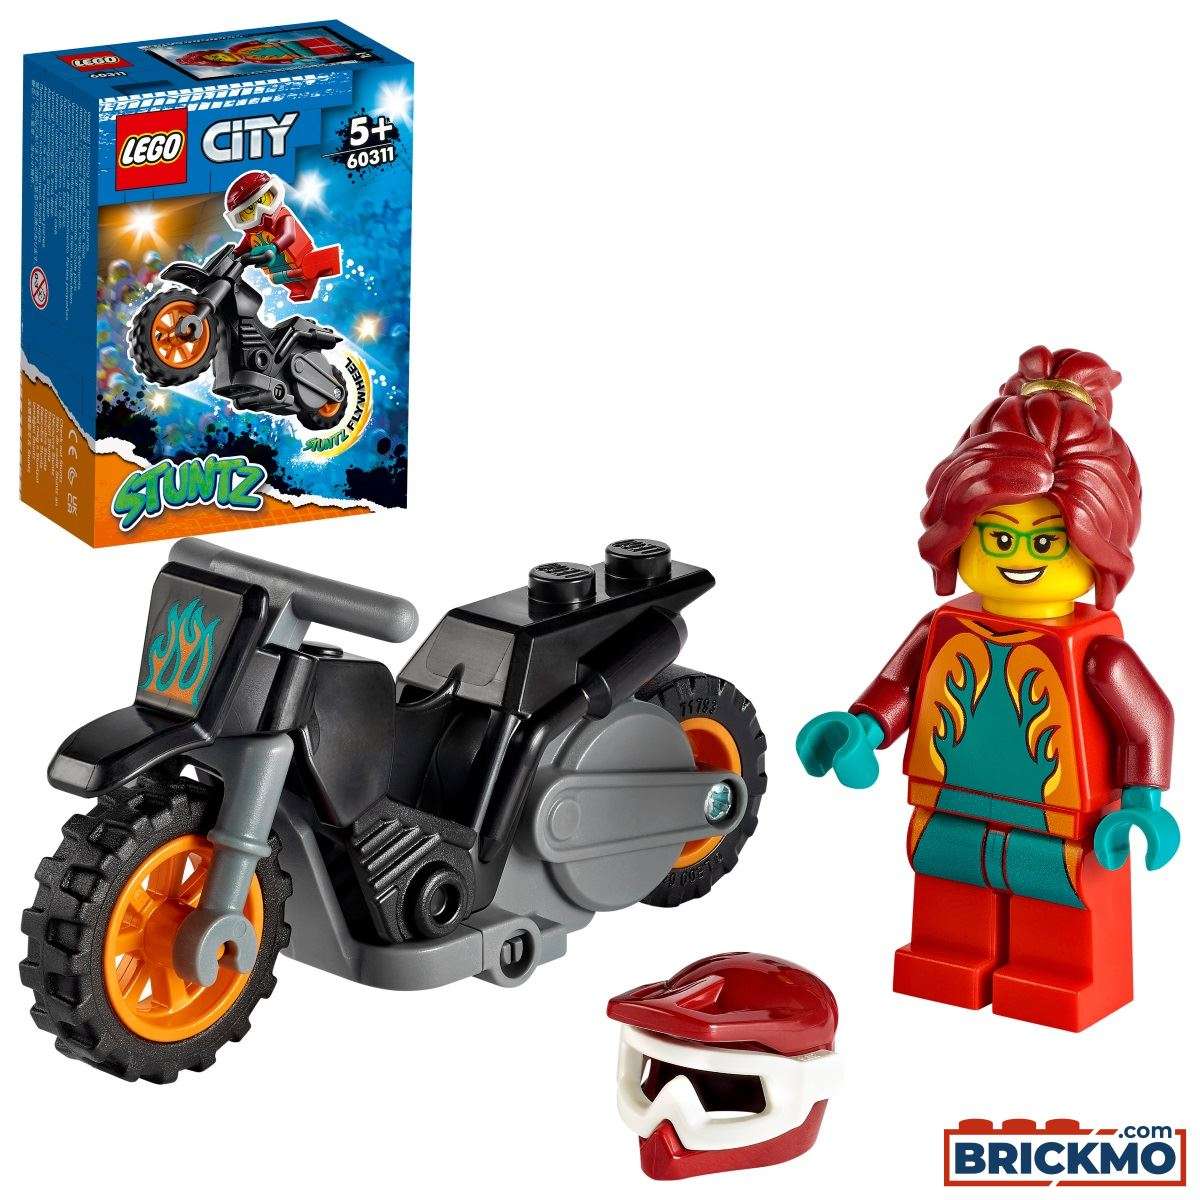 LEGO City 60311 Feuer-Stuntbike 60311